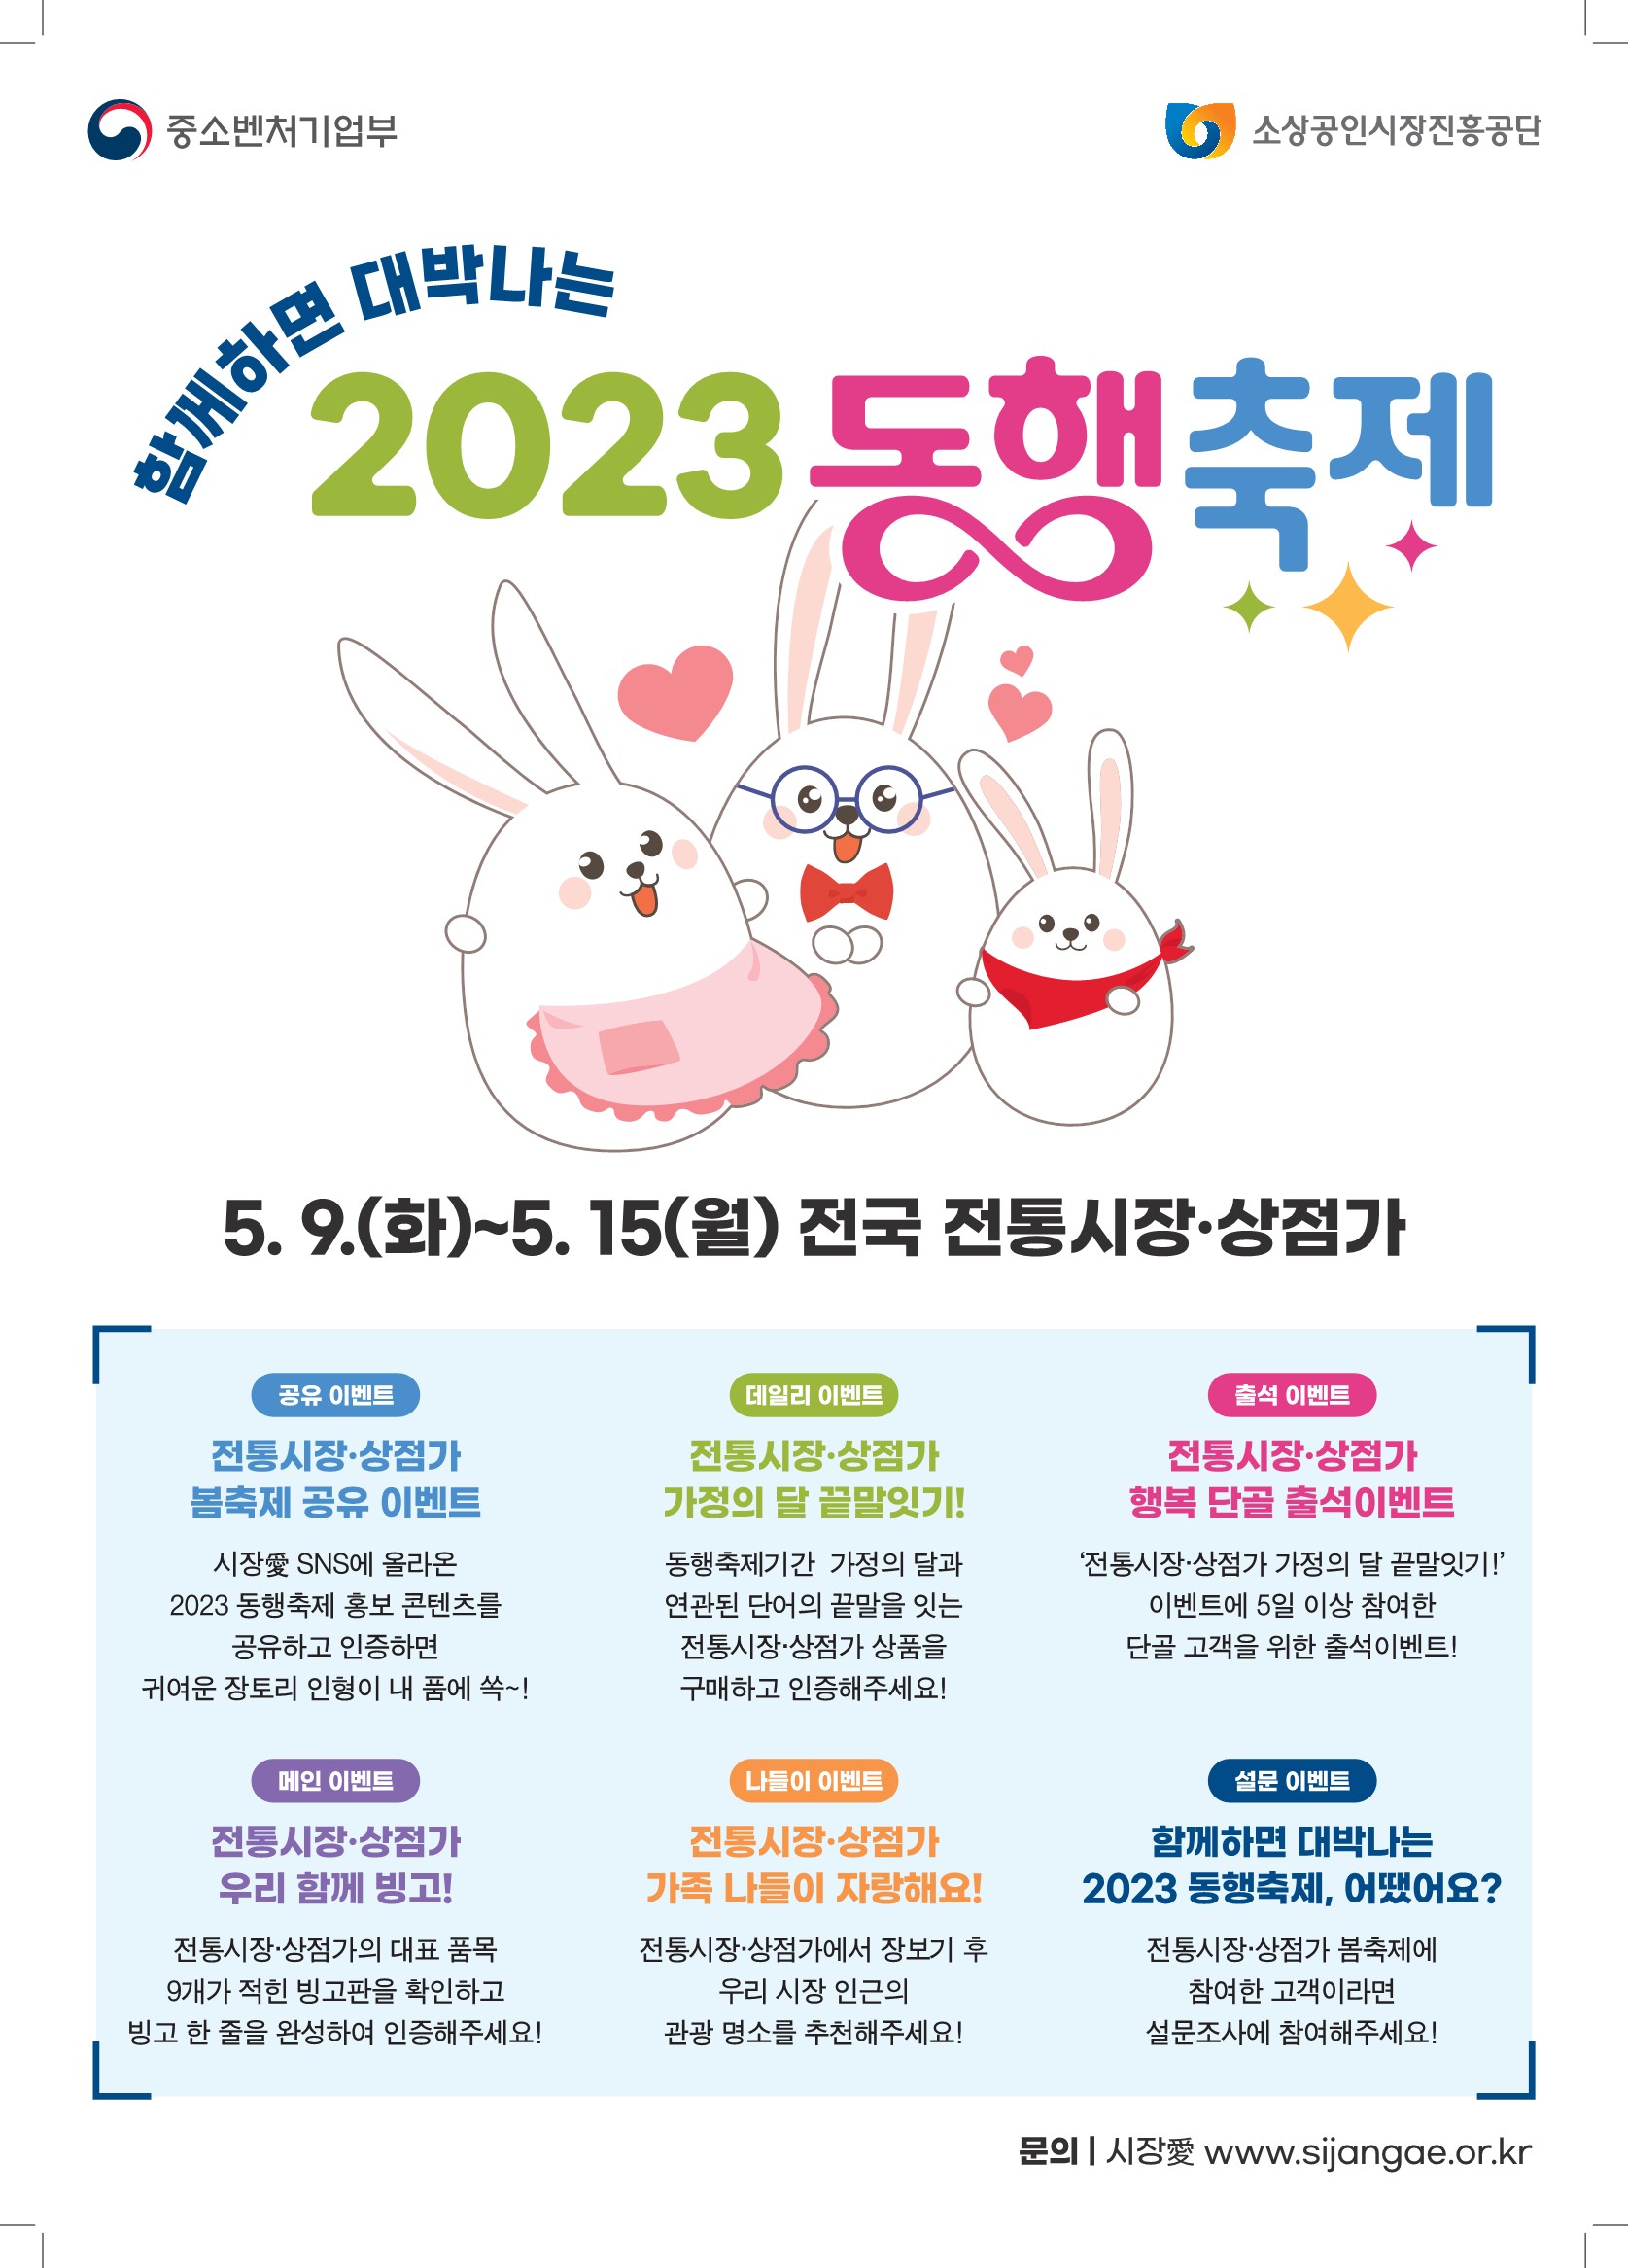 [홍보 포스터]2023년 동행축제(함께하면 대박나는 2023동행축제)